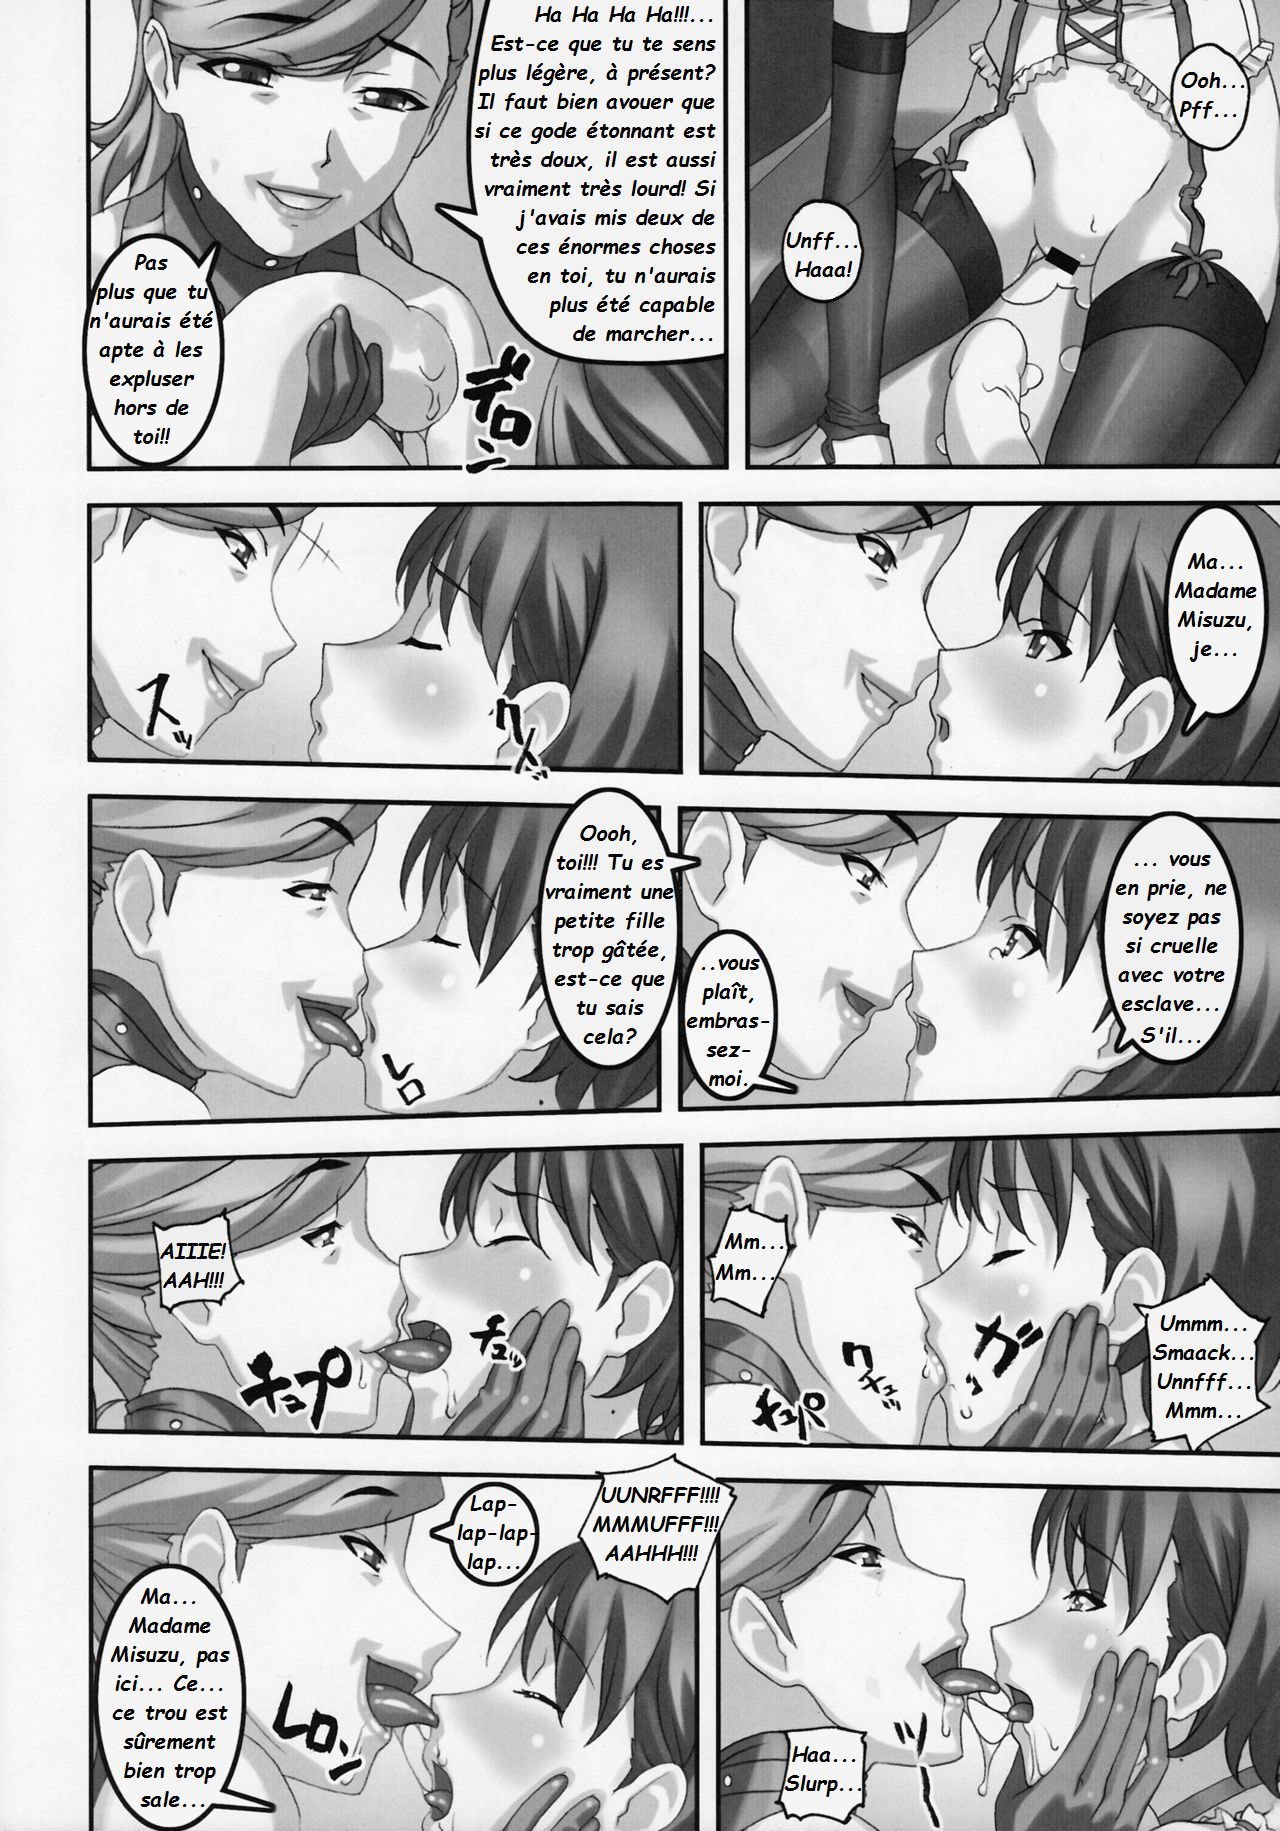 Anoko ga Mainichi Oshiri no Ana ni Butta Mono o Irerare Nando mo Zecchou ni Tassuru Manga  La jeune Rei et sa nounou Misuzu. Volume 1 numero d'image 8